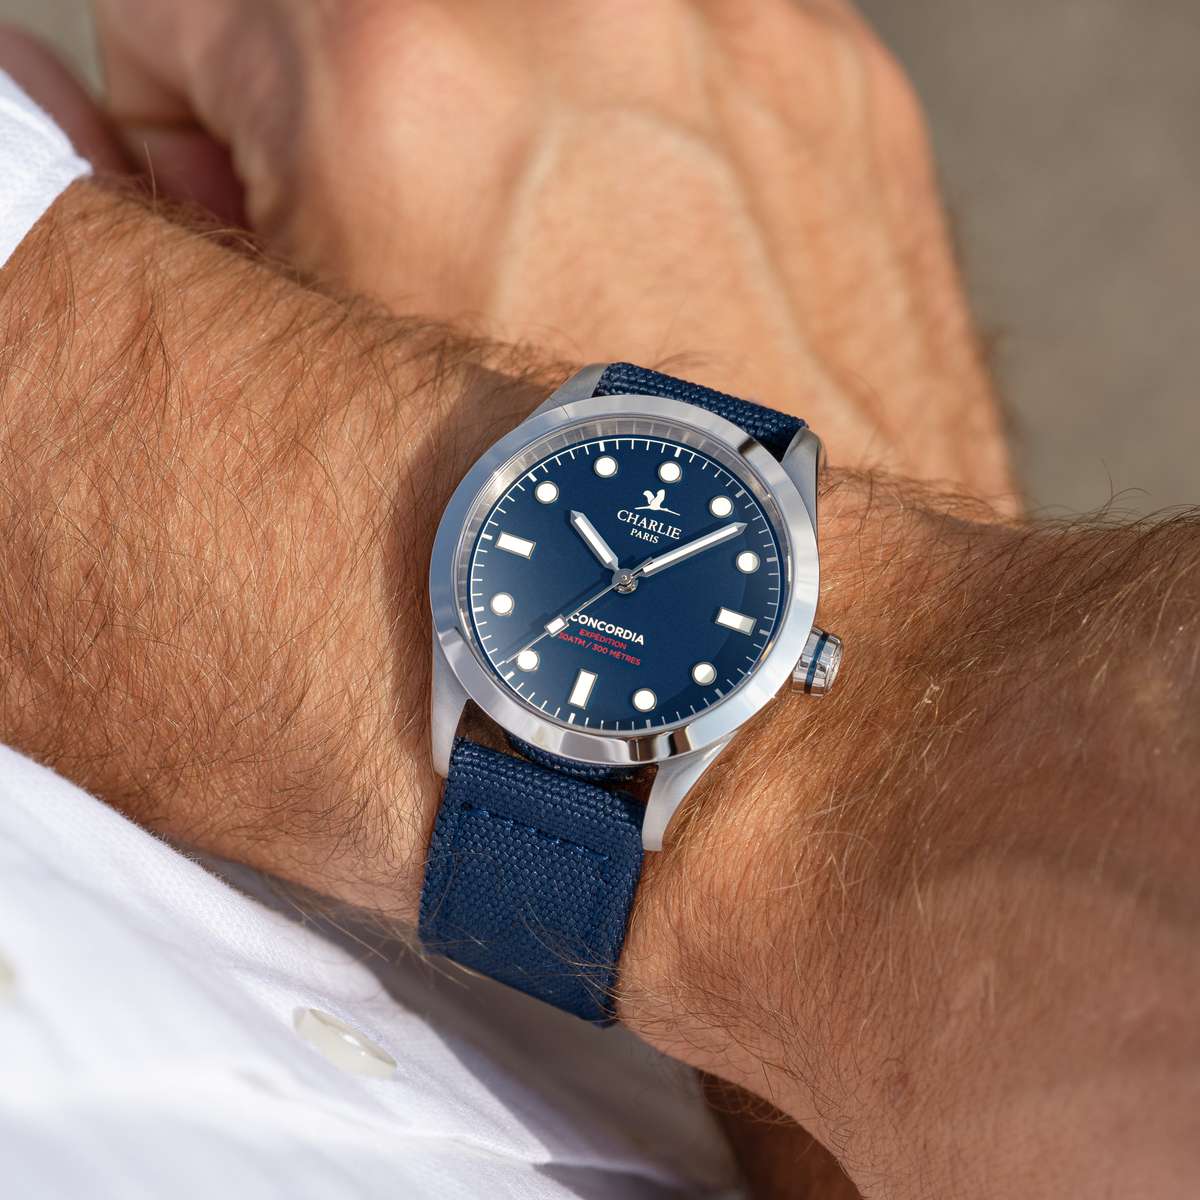 Gros plan sur le poignet d’un homme arborant le modèle de montre quartz étanche pour homme Concordia avec cadran bleu